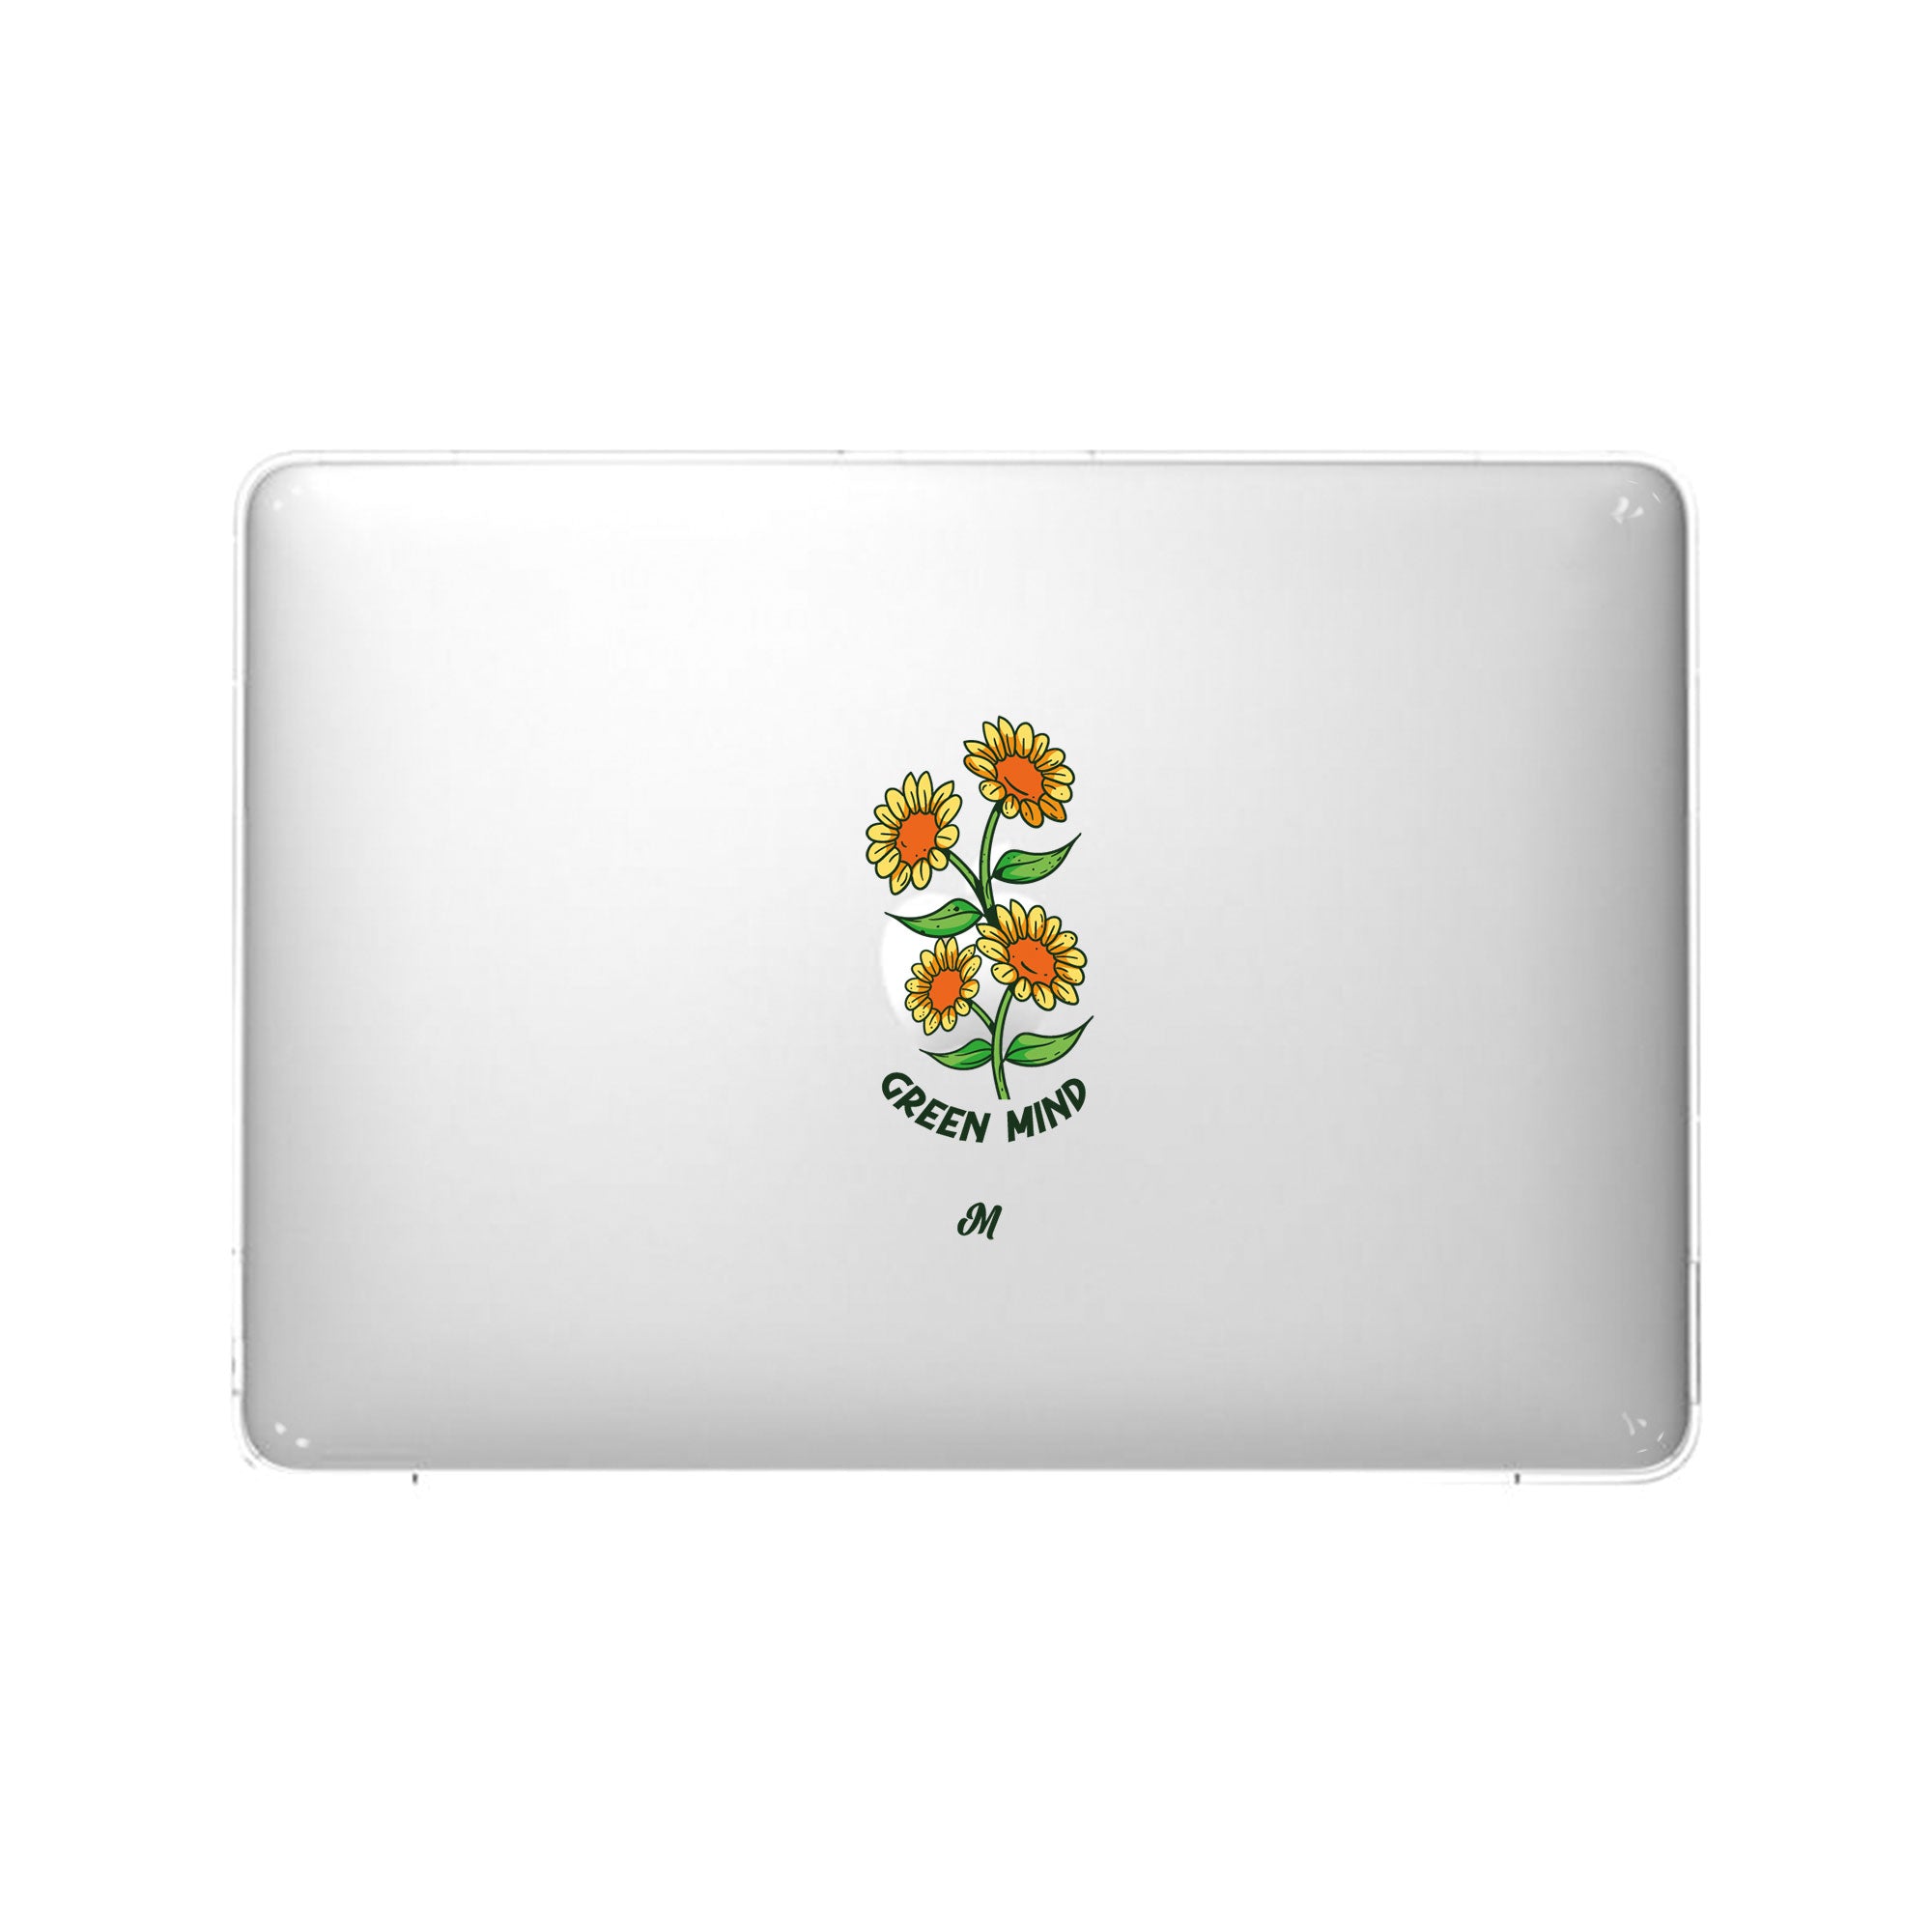 Jardin de girasoles MacBook Case - Mandala Cases 